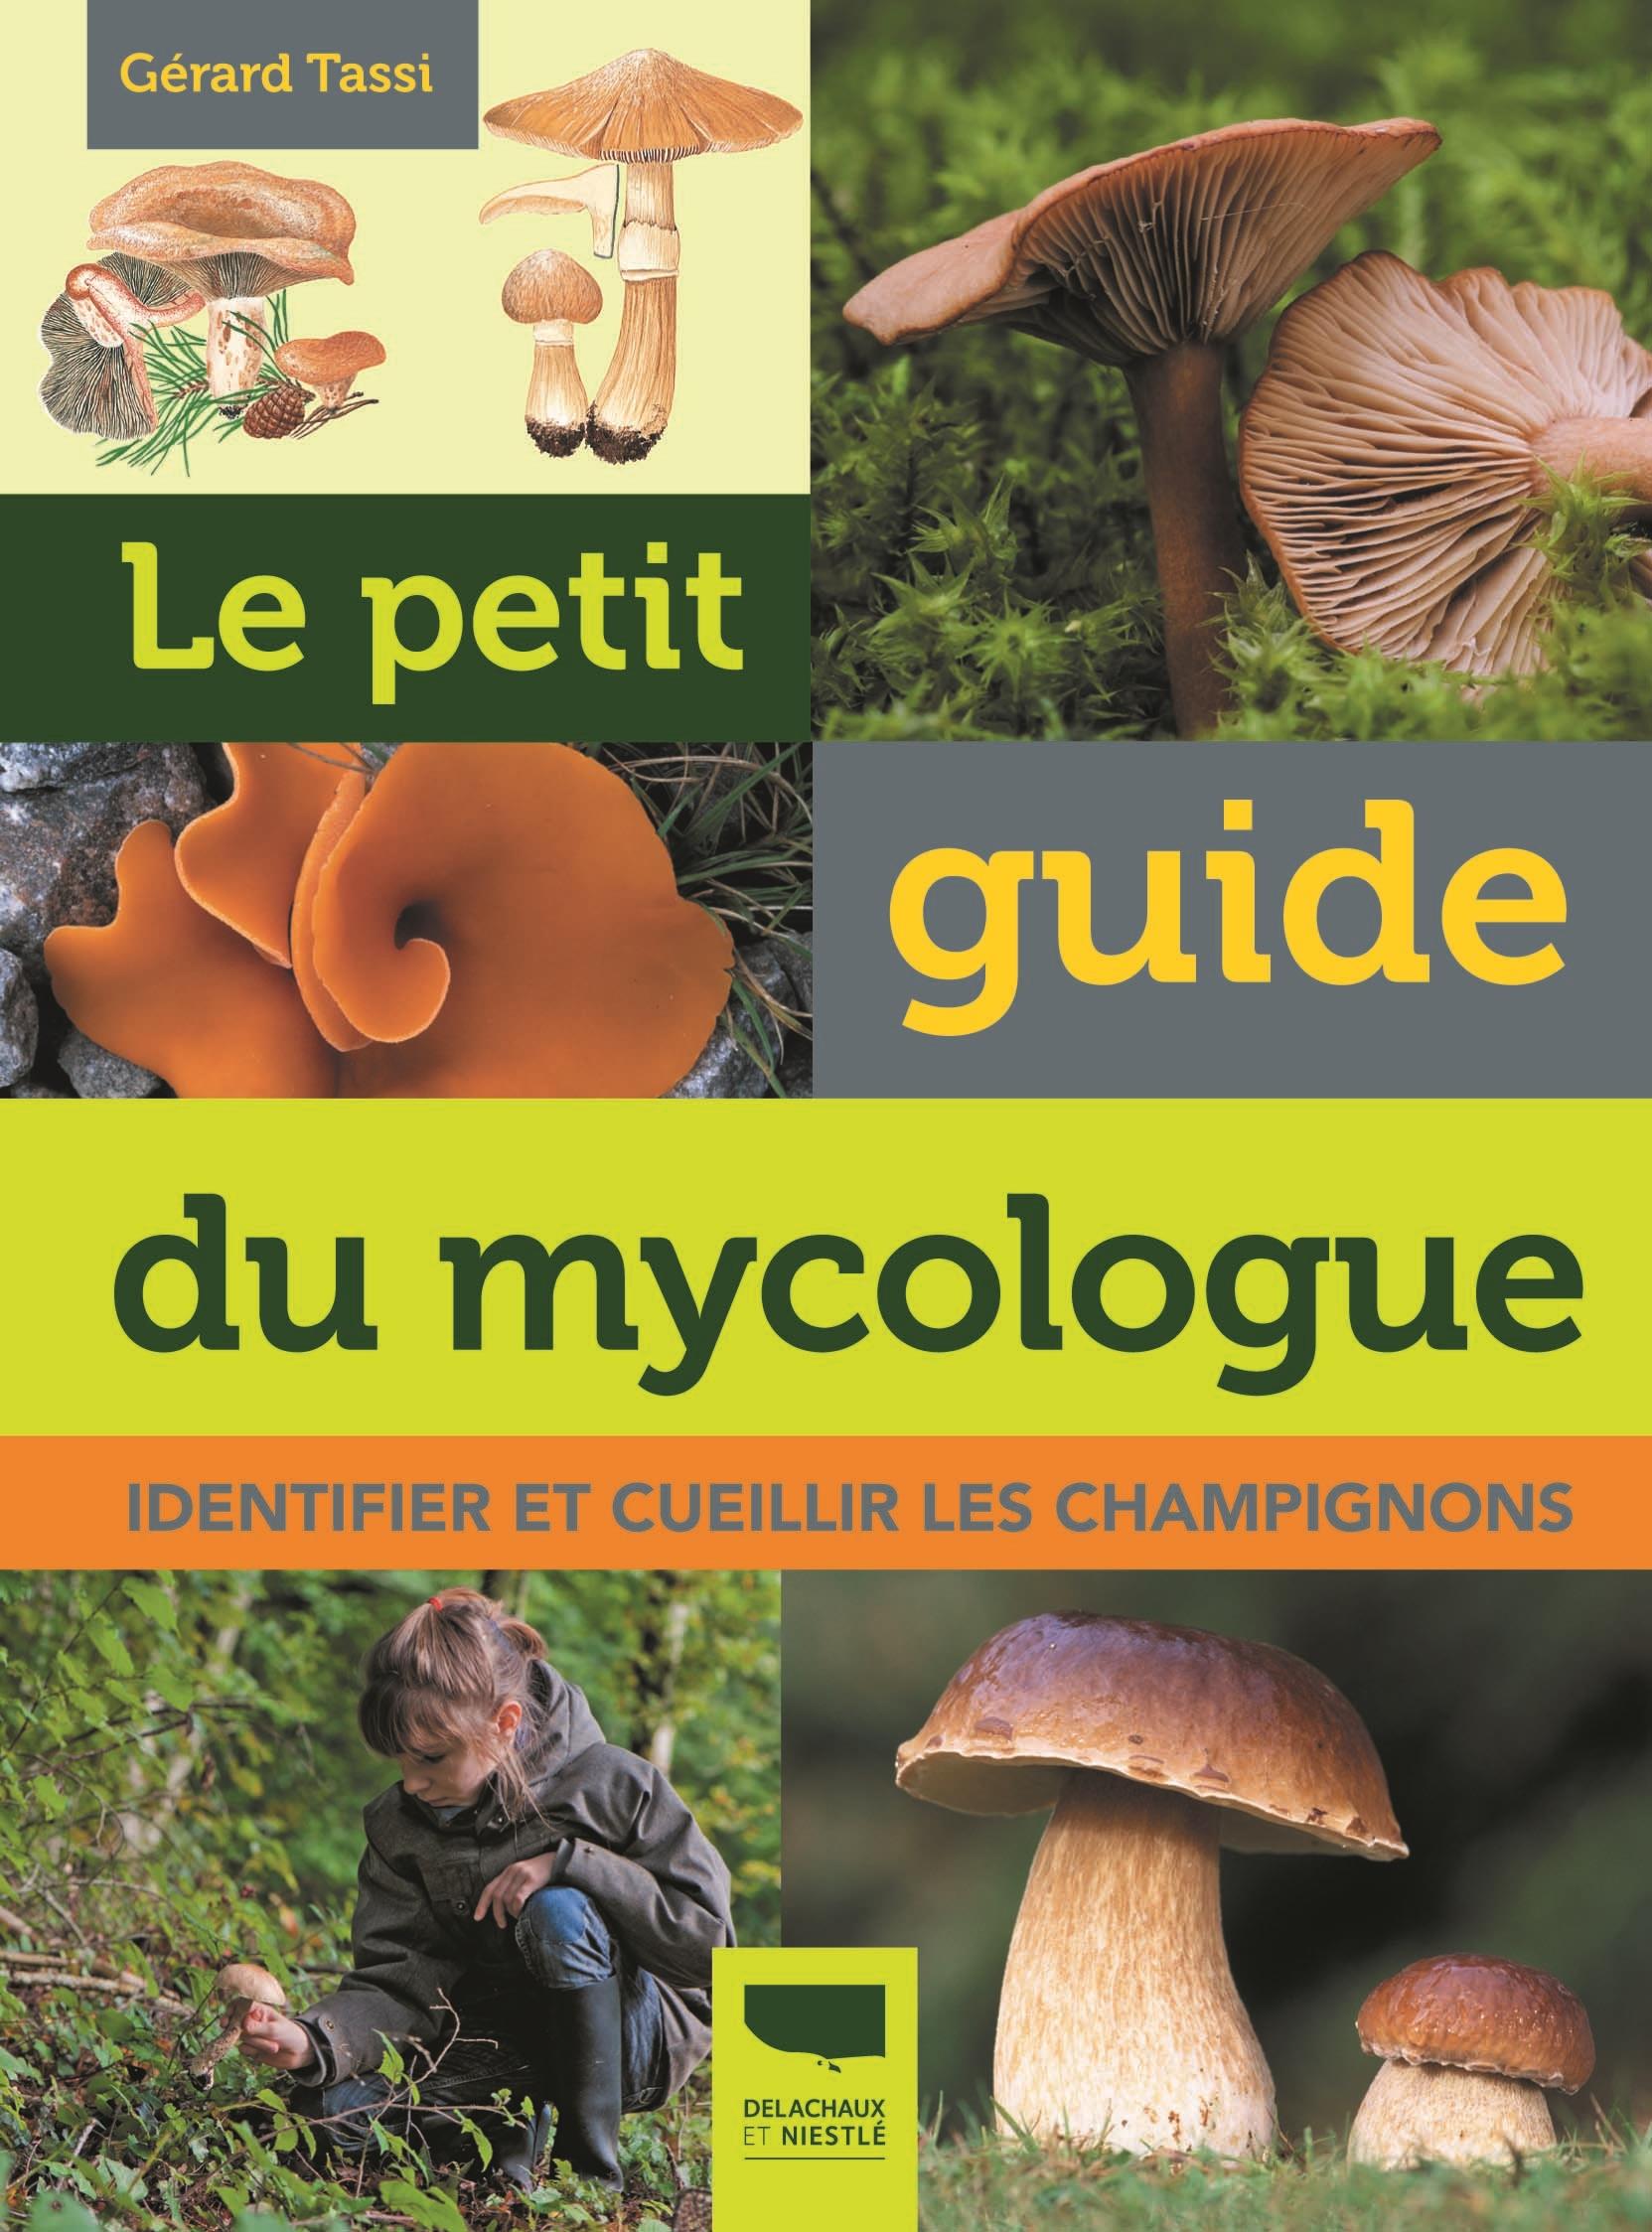 Le petit guide du mycologue - Identifier et accueillir les champignons